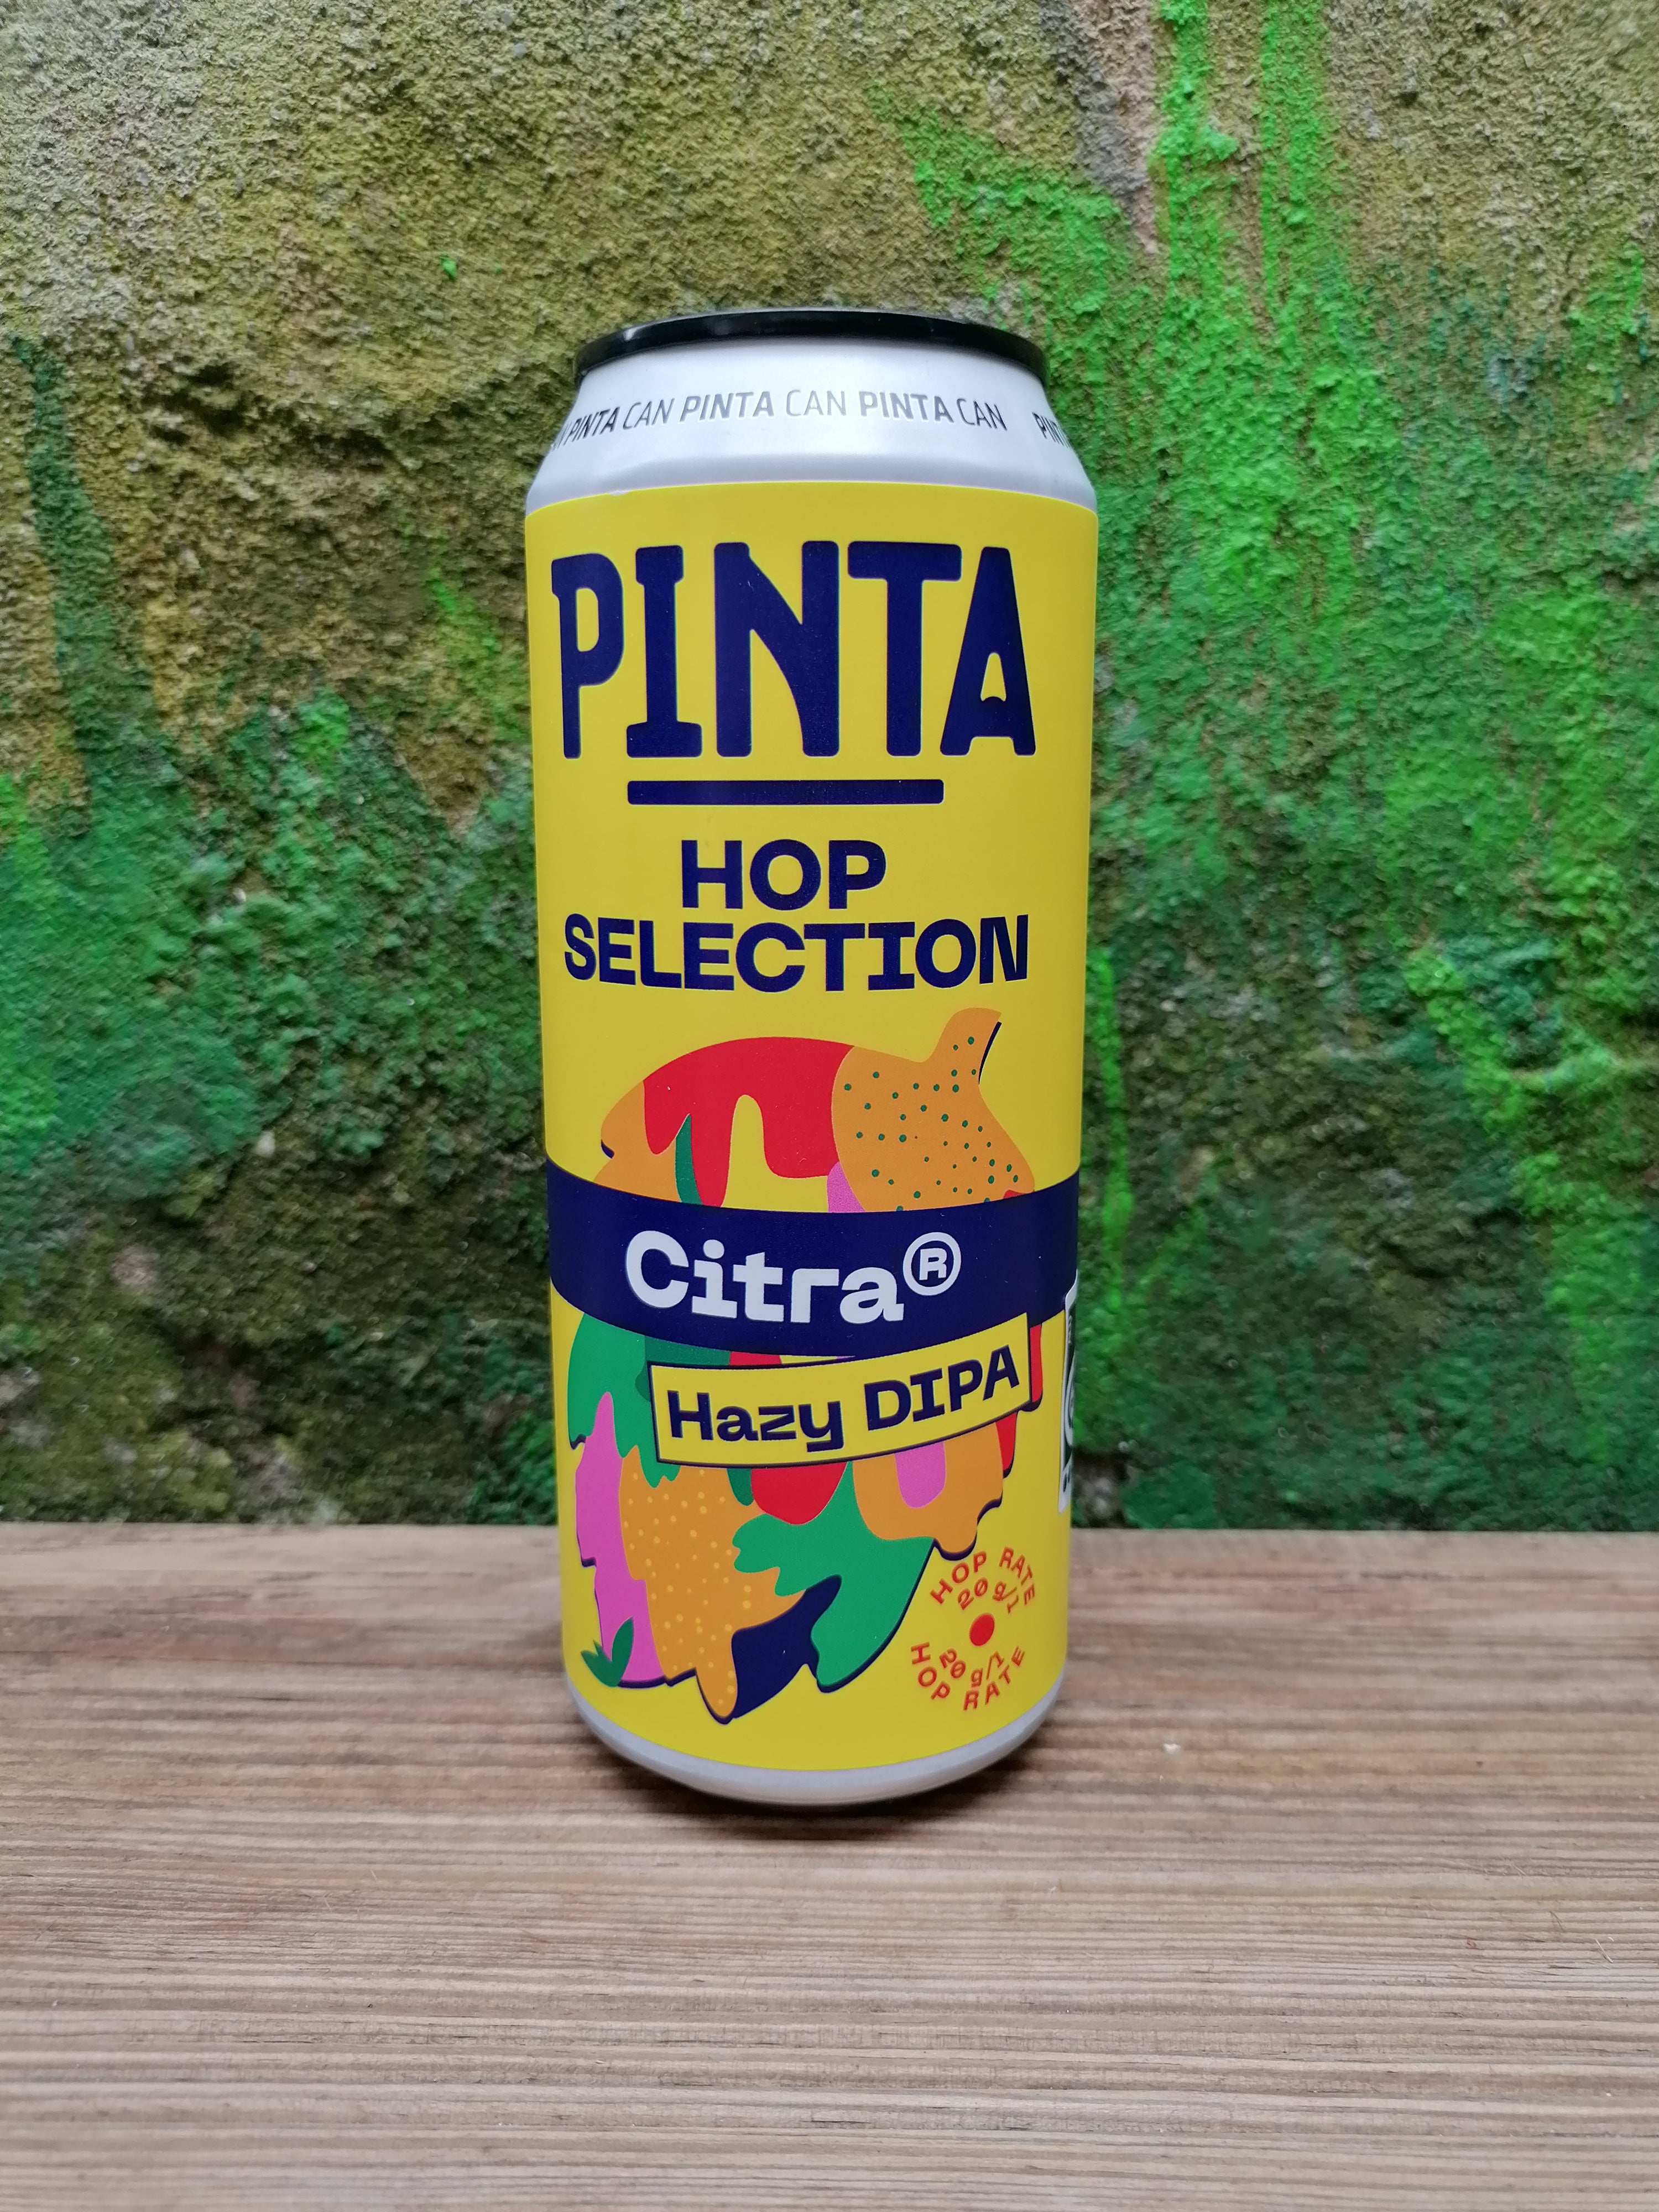 Billede af Pinta "Hop Selection: Citra" | 8% | 50cl | Hazy DIPA